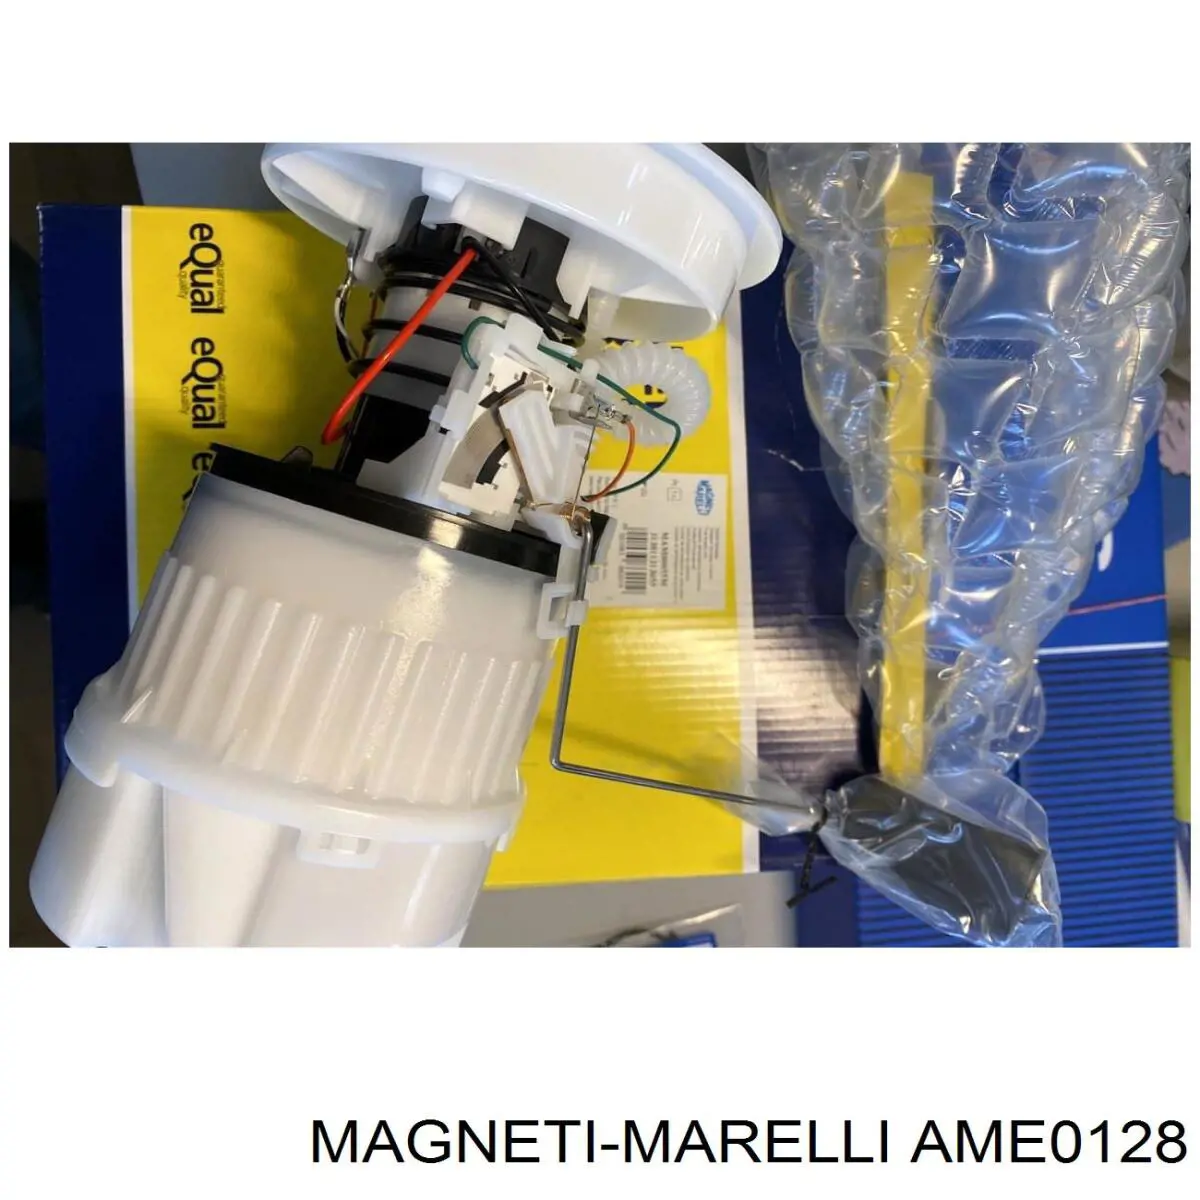 AME0128 Magneti Marelli interruptor magnético, estárter